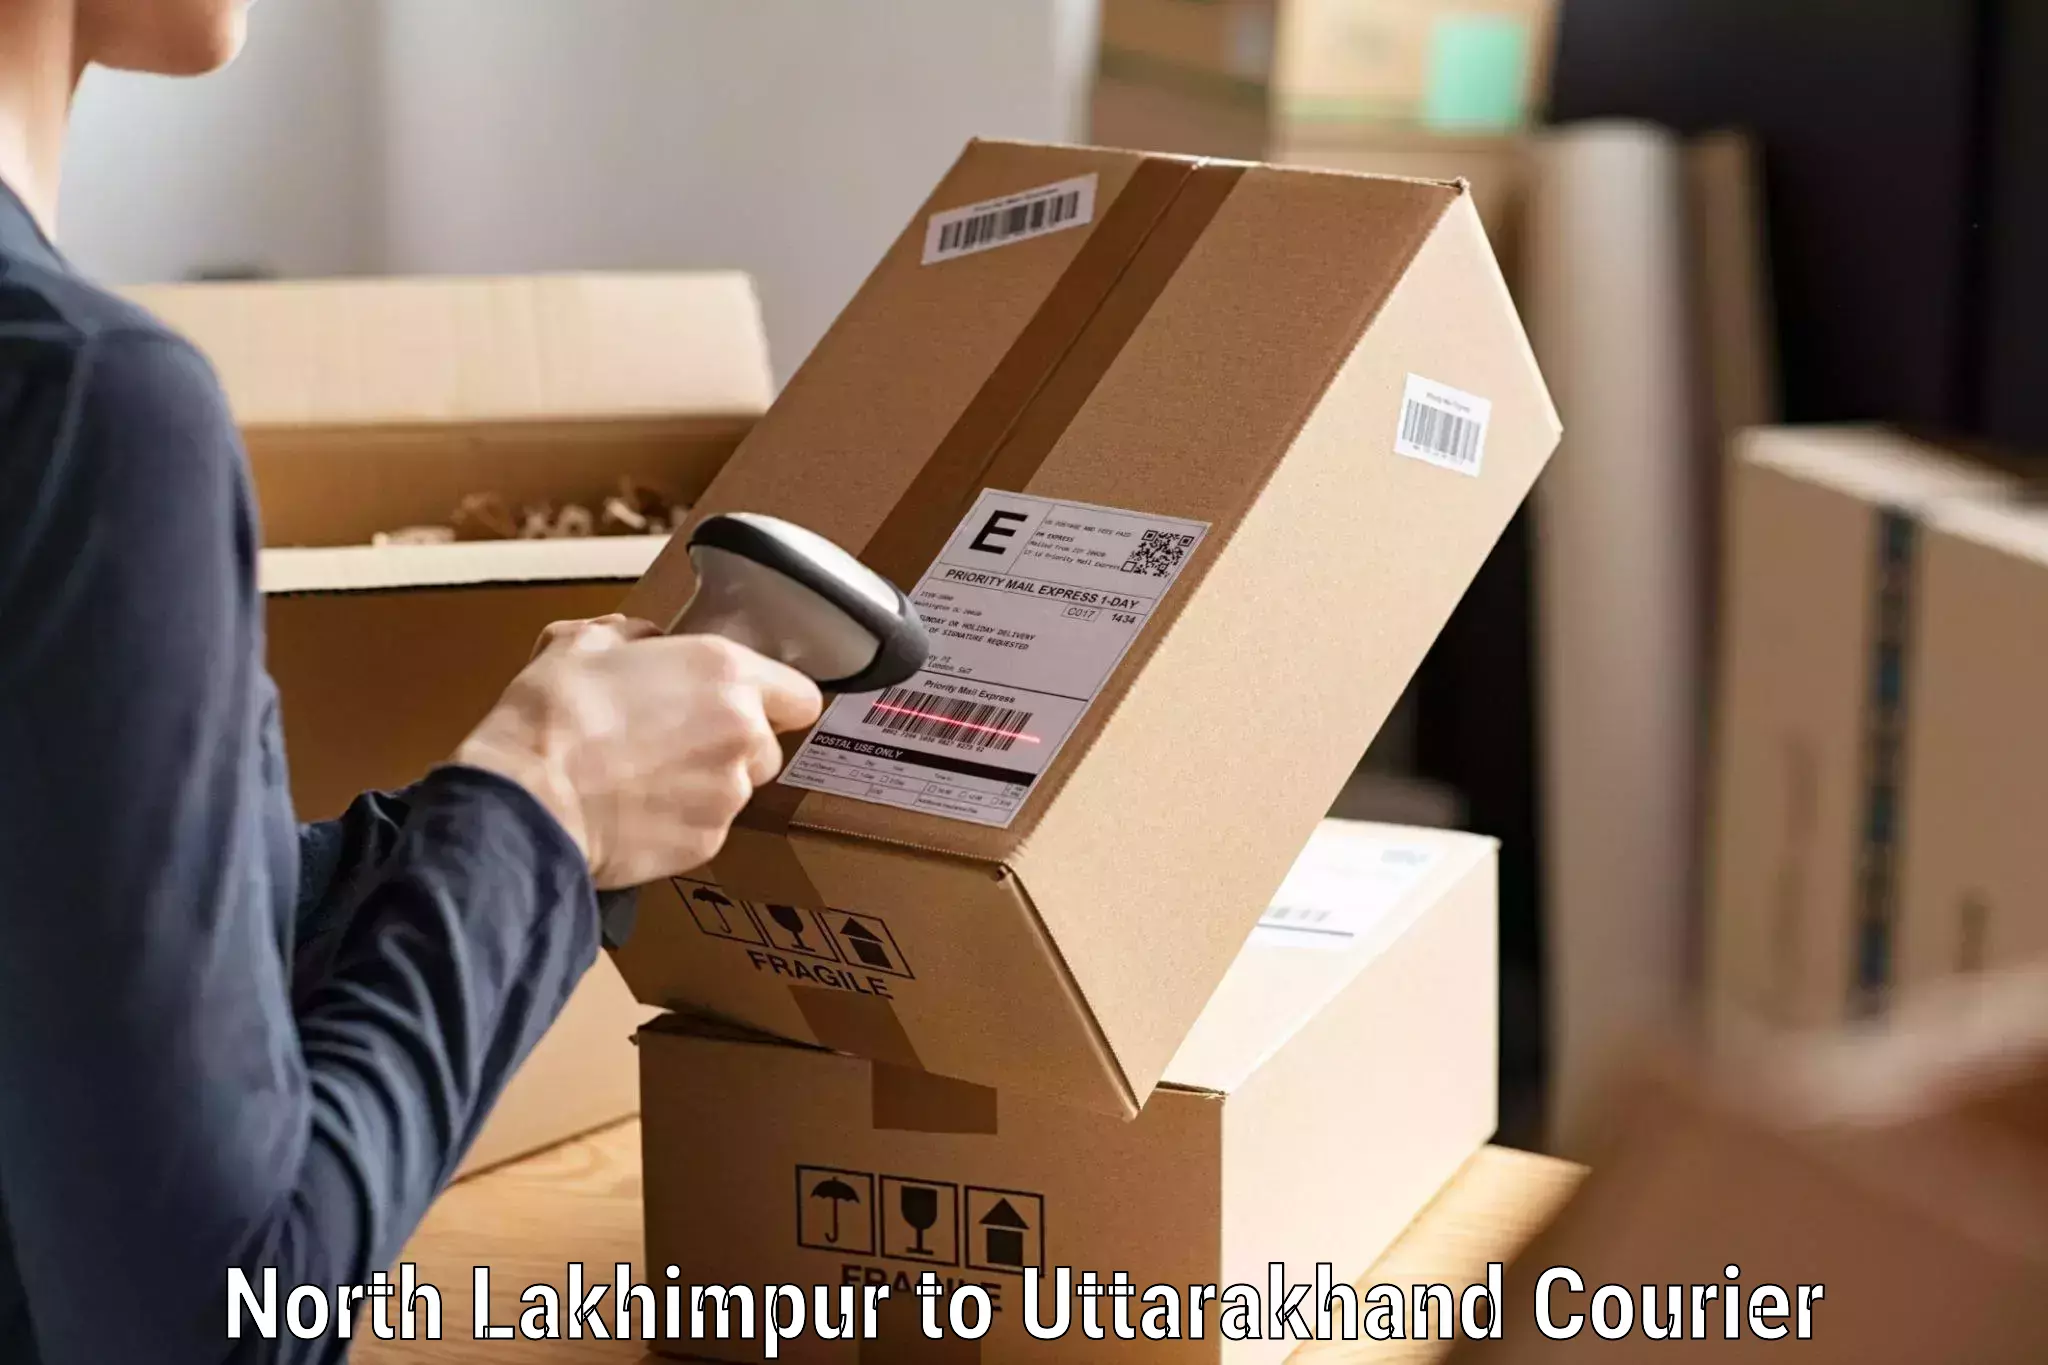 Dynamic courier services North Lakhimpur to Kotdwara